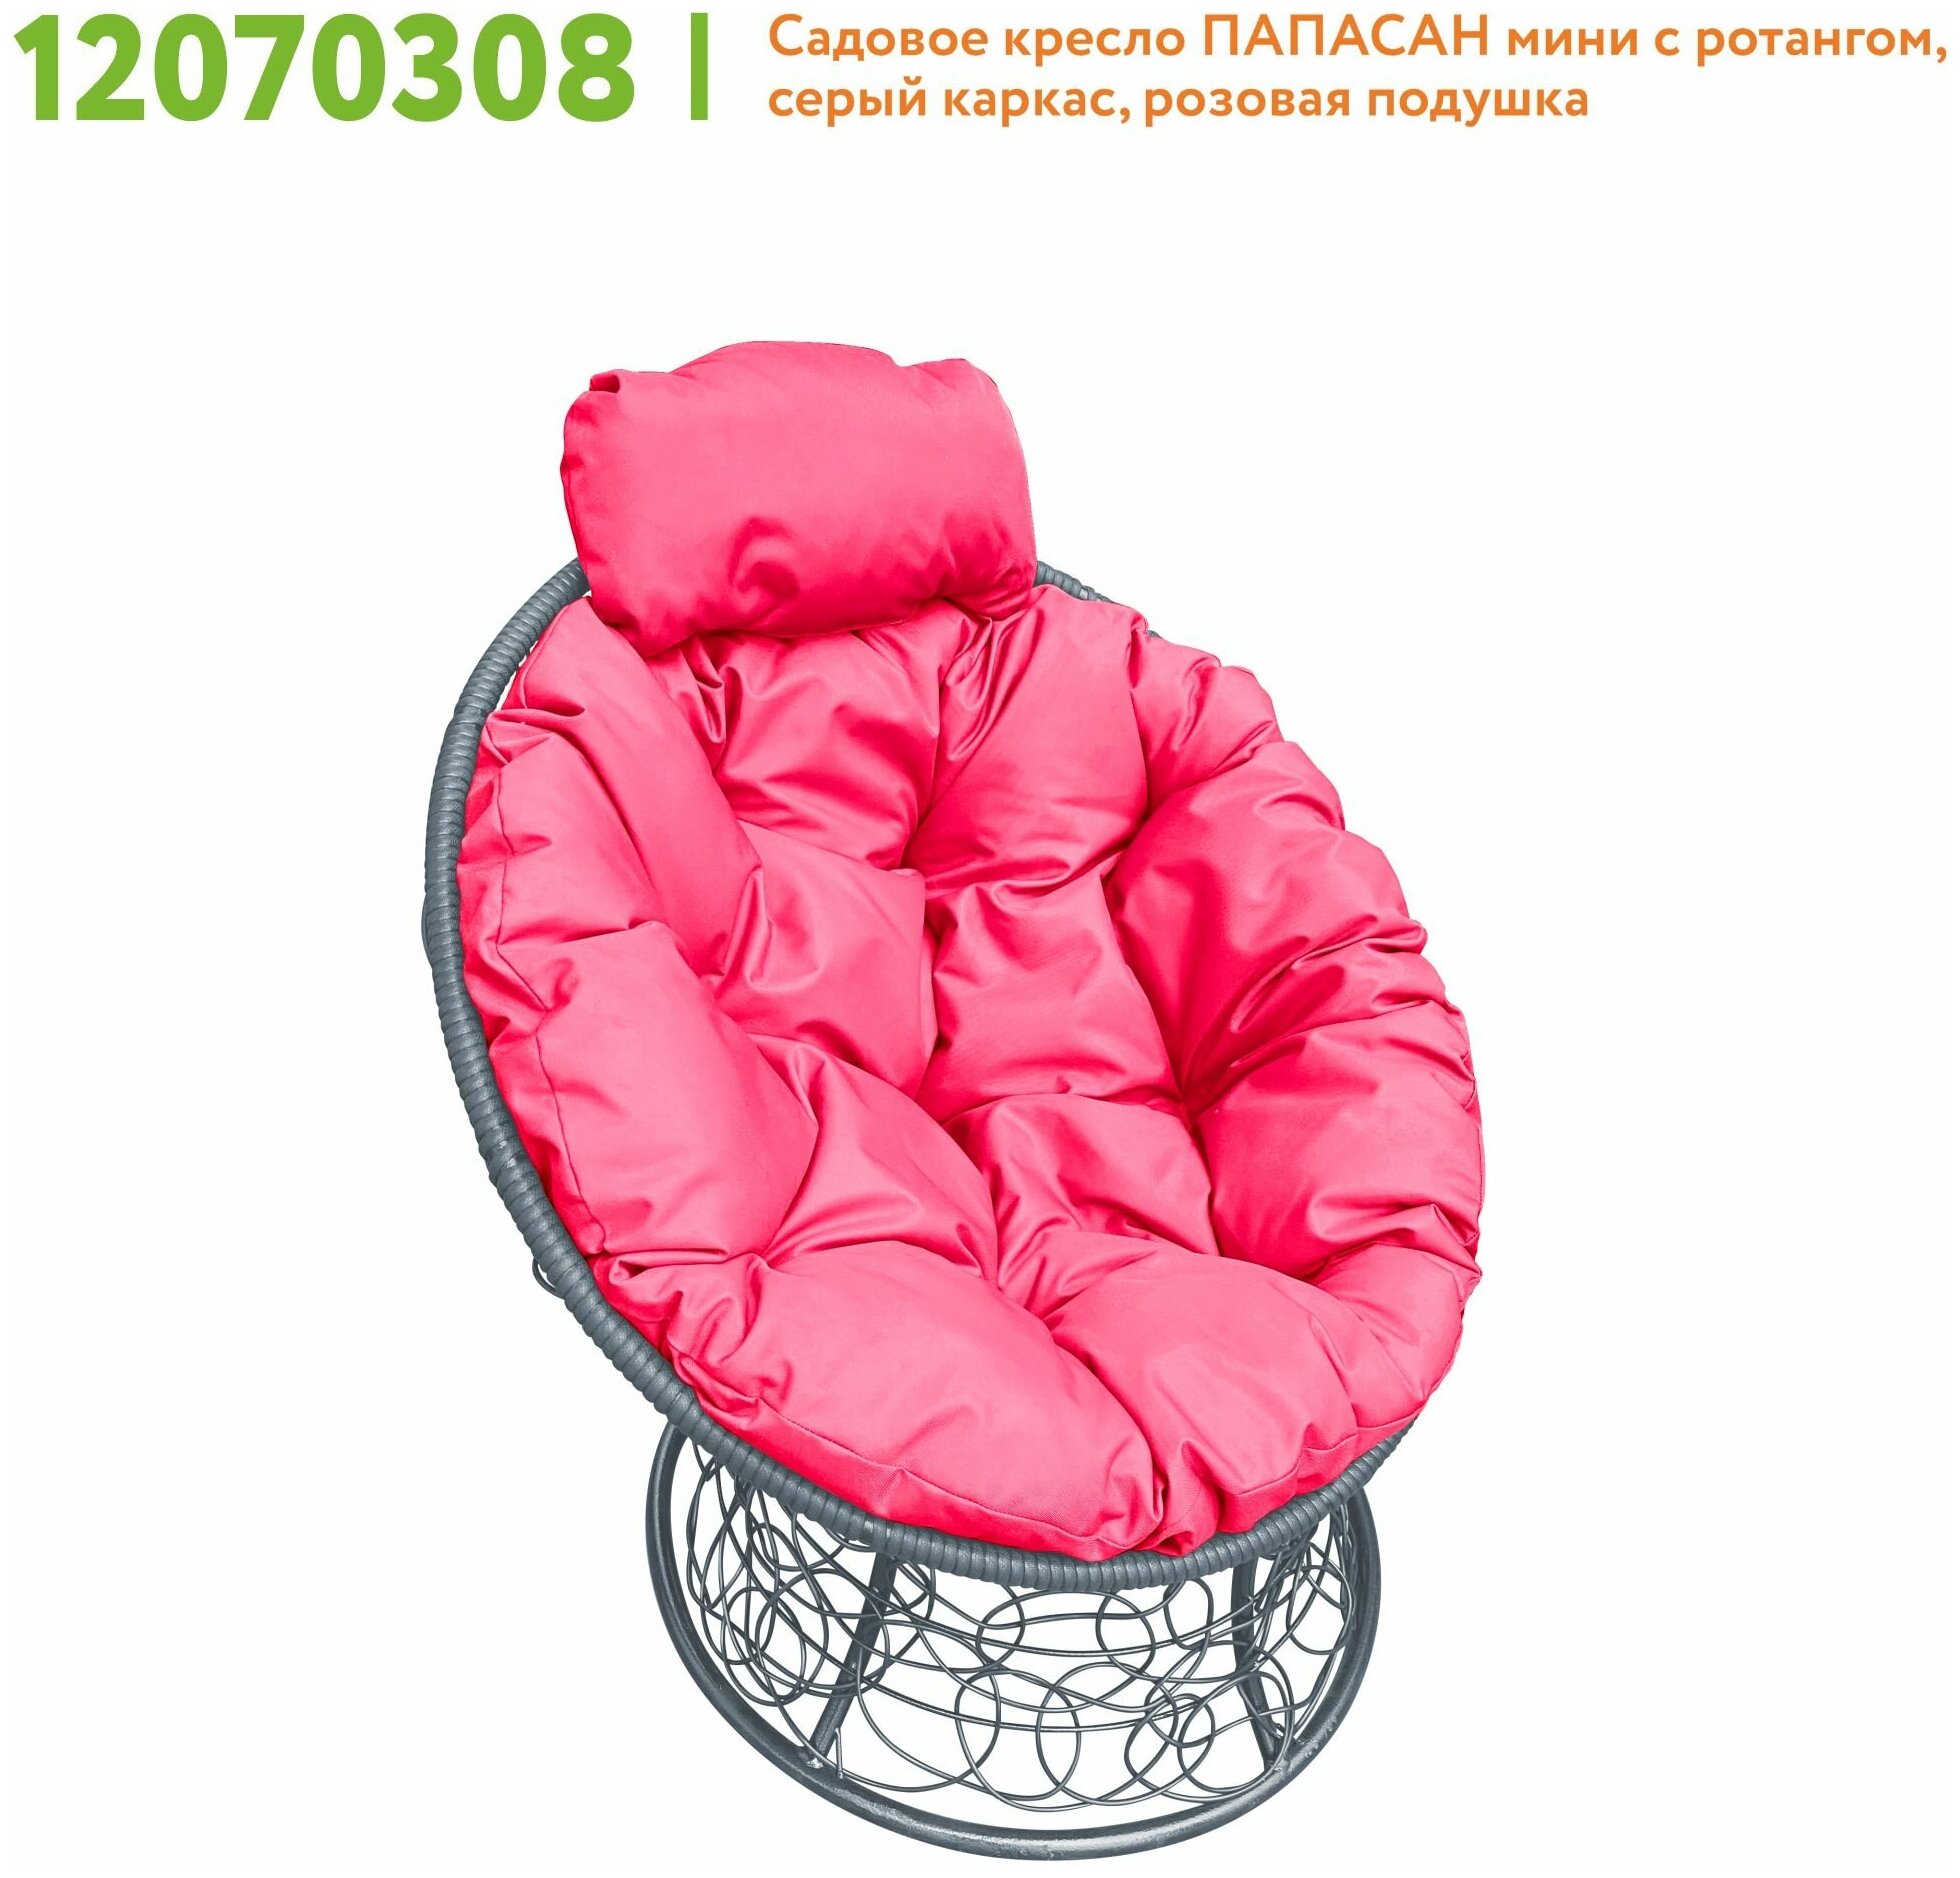 Кресло m-group папасан мини ротанг серое, розовая подушка - фотография № 7